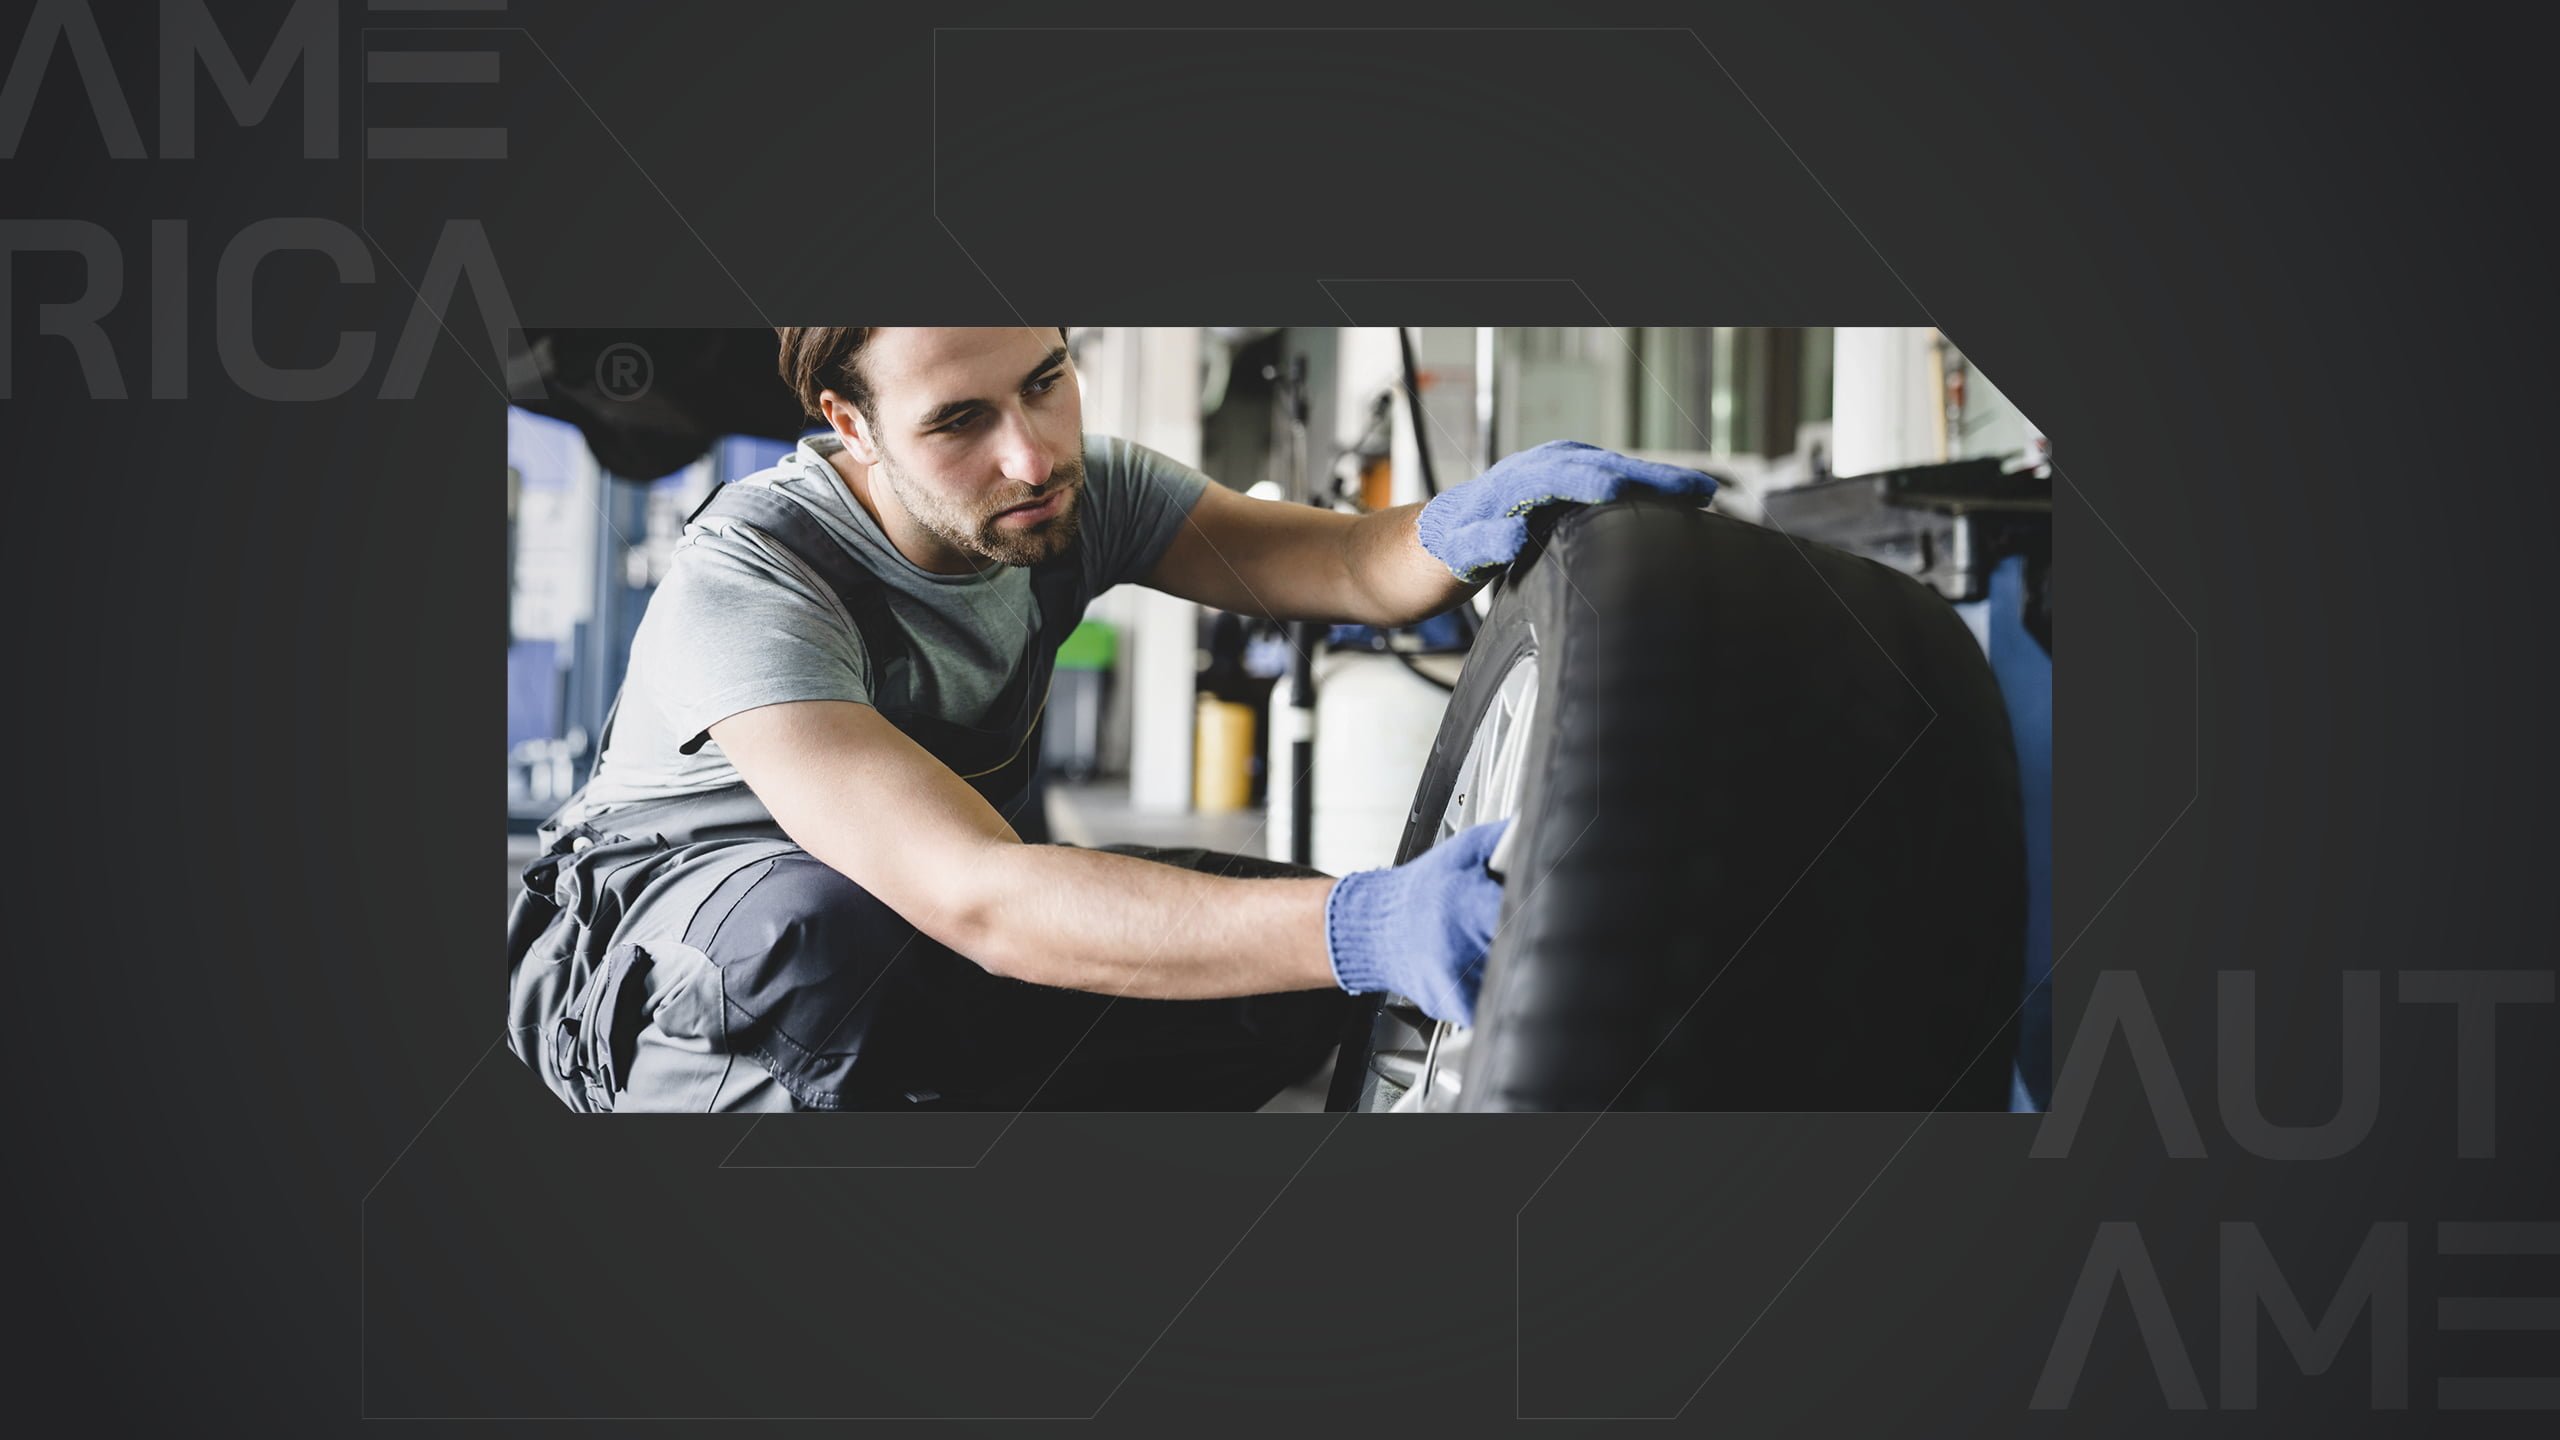 Garantia dos pneus: guia completo para entender seus direitos